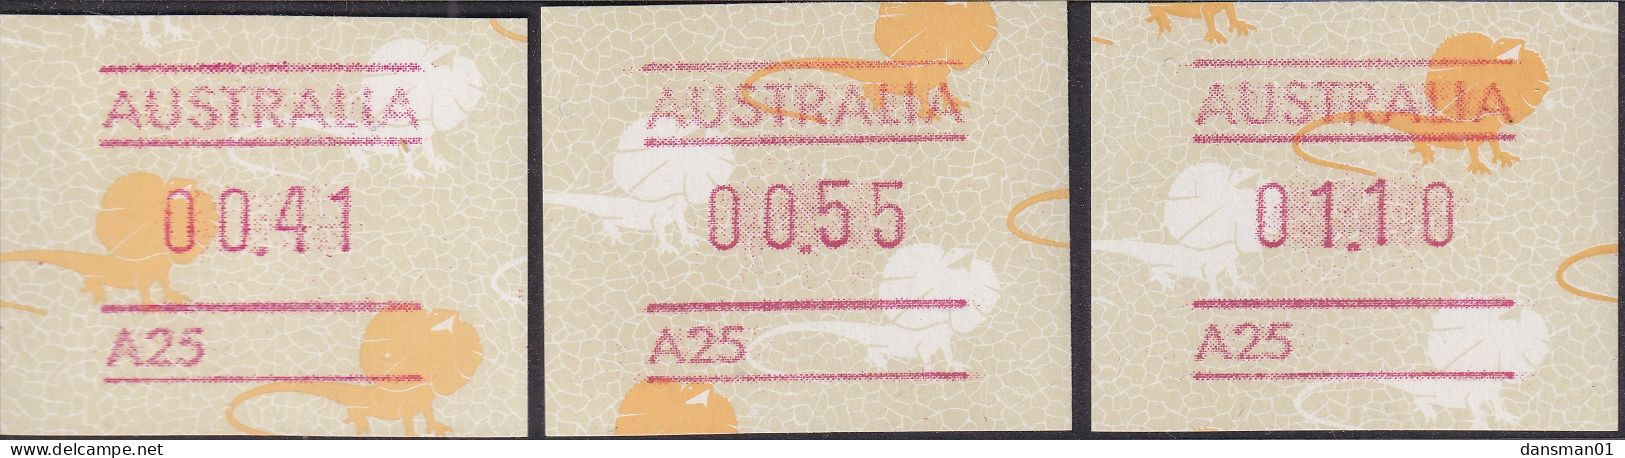 Australia 1989 Frama BUTTON SET A25 MNH - Ungebraucht